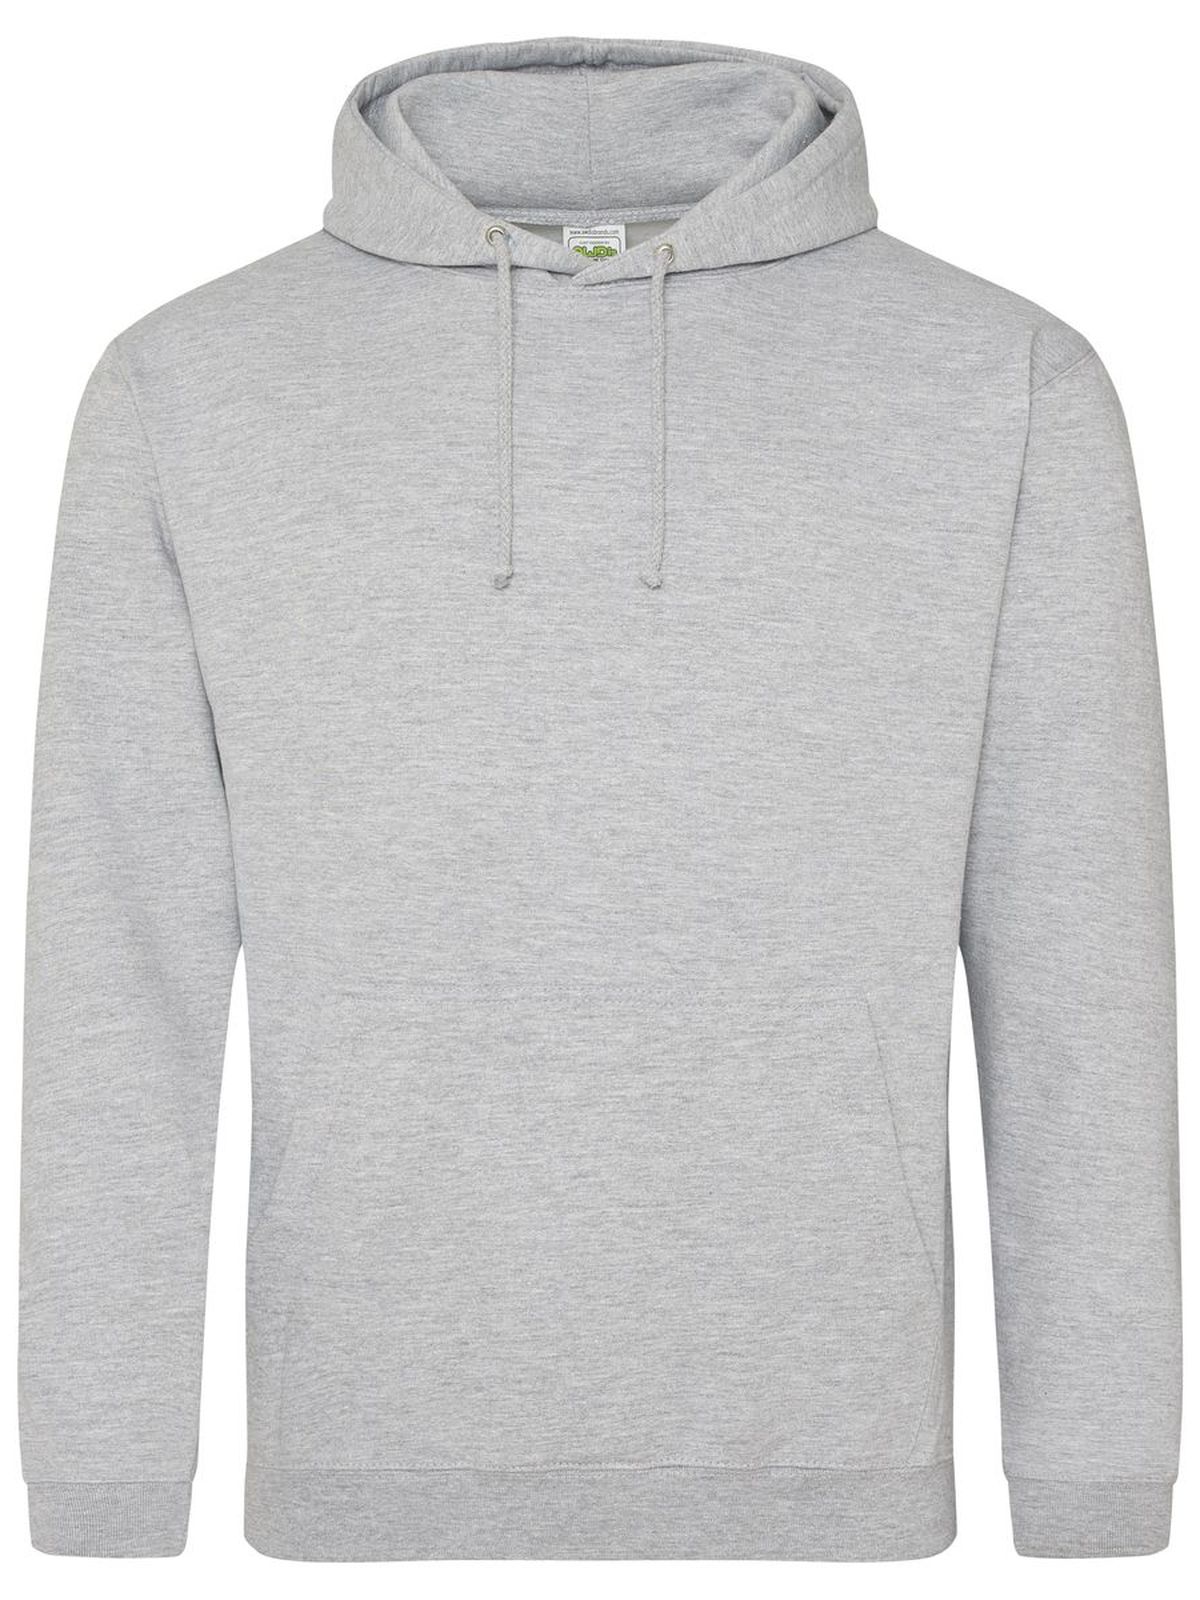 college-hoodie-heather-grey.webp